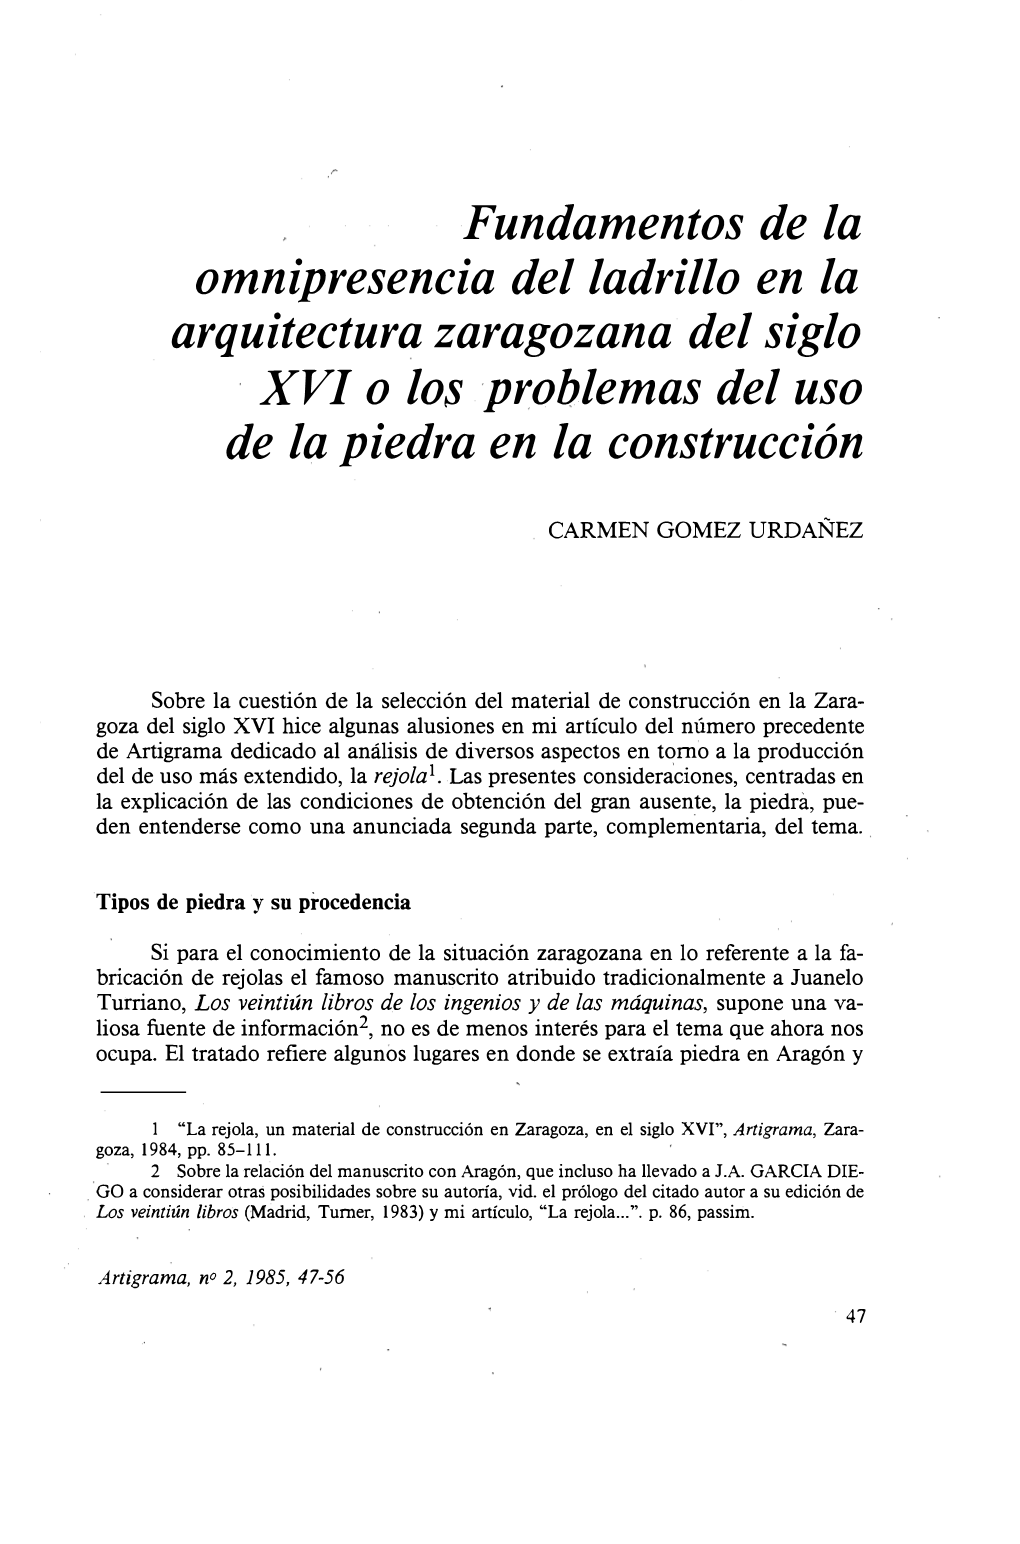 Fundamentos De La Omnipresencia Del Ladrillo En La Arquitectura Zaragozana Del Siglo XVI O Los Problemas Del Uso De La Piedra En La Construcción